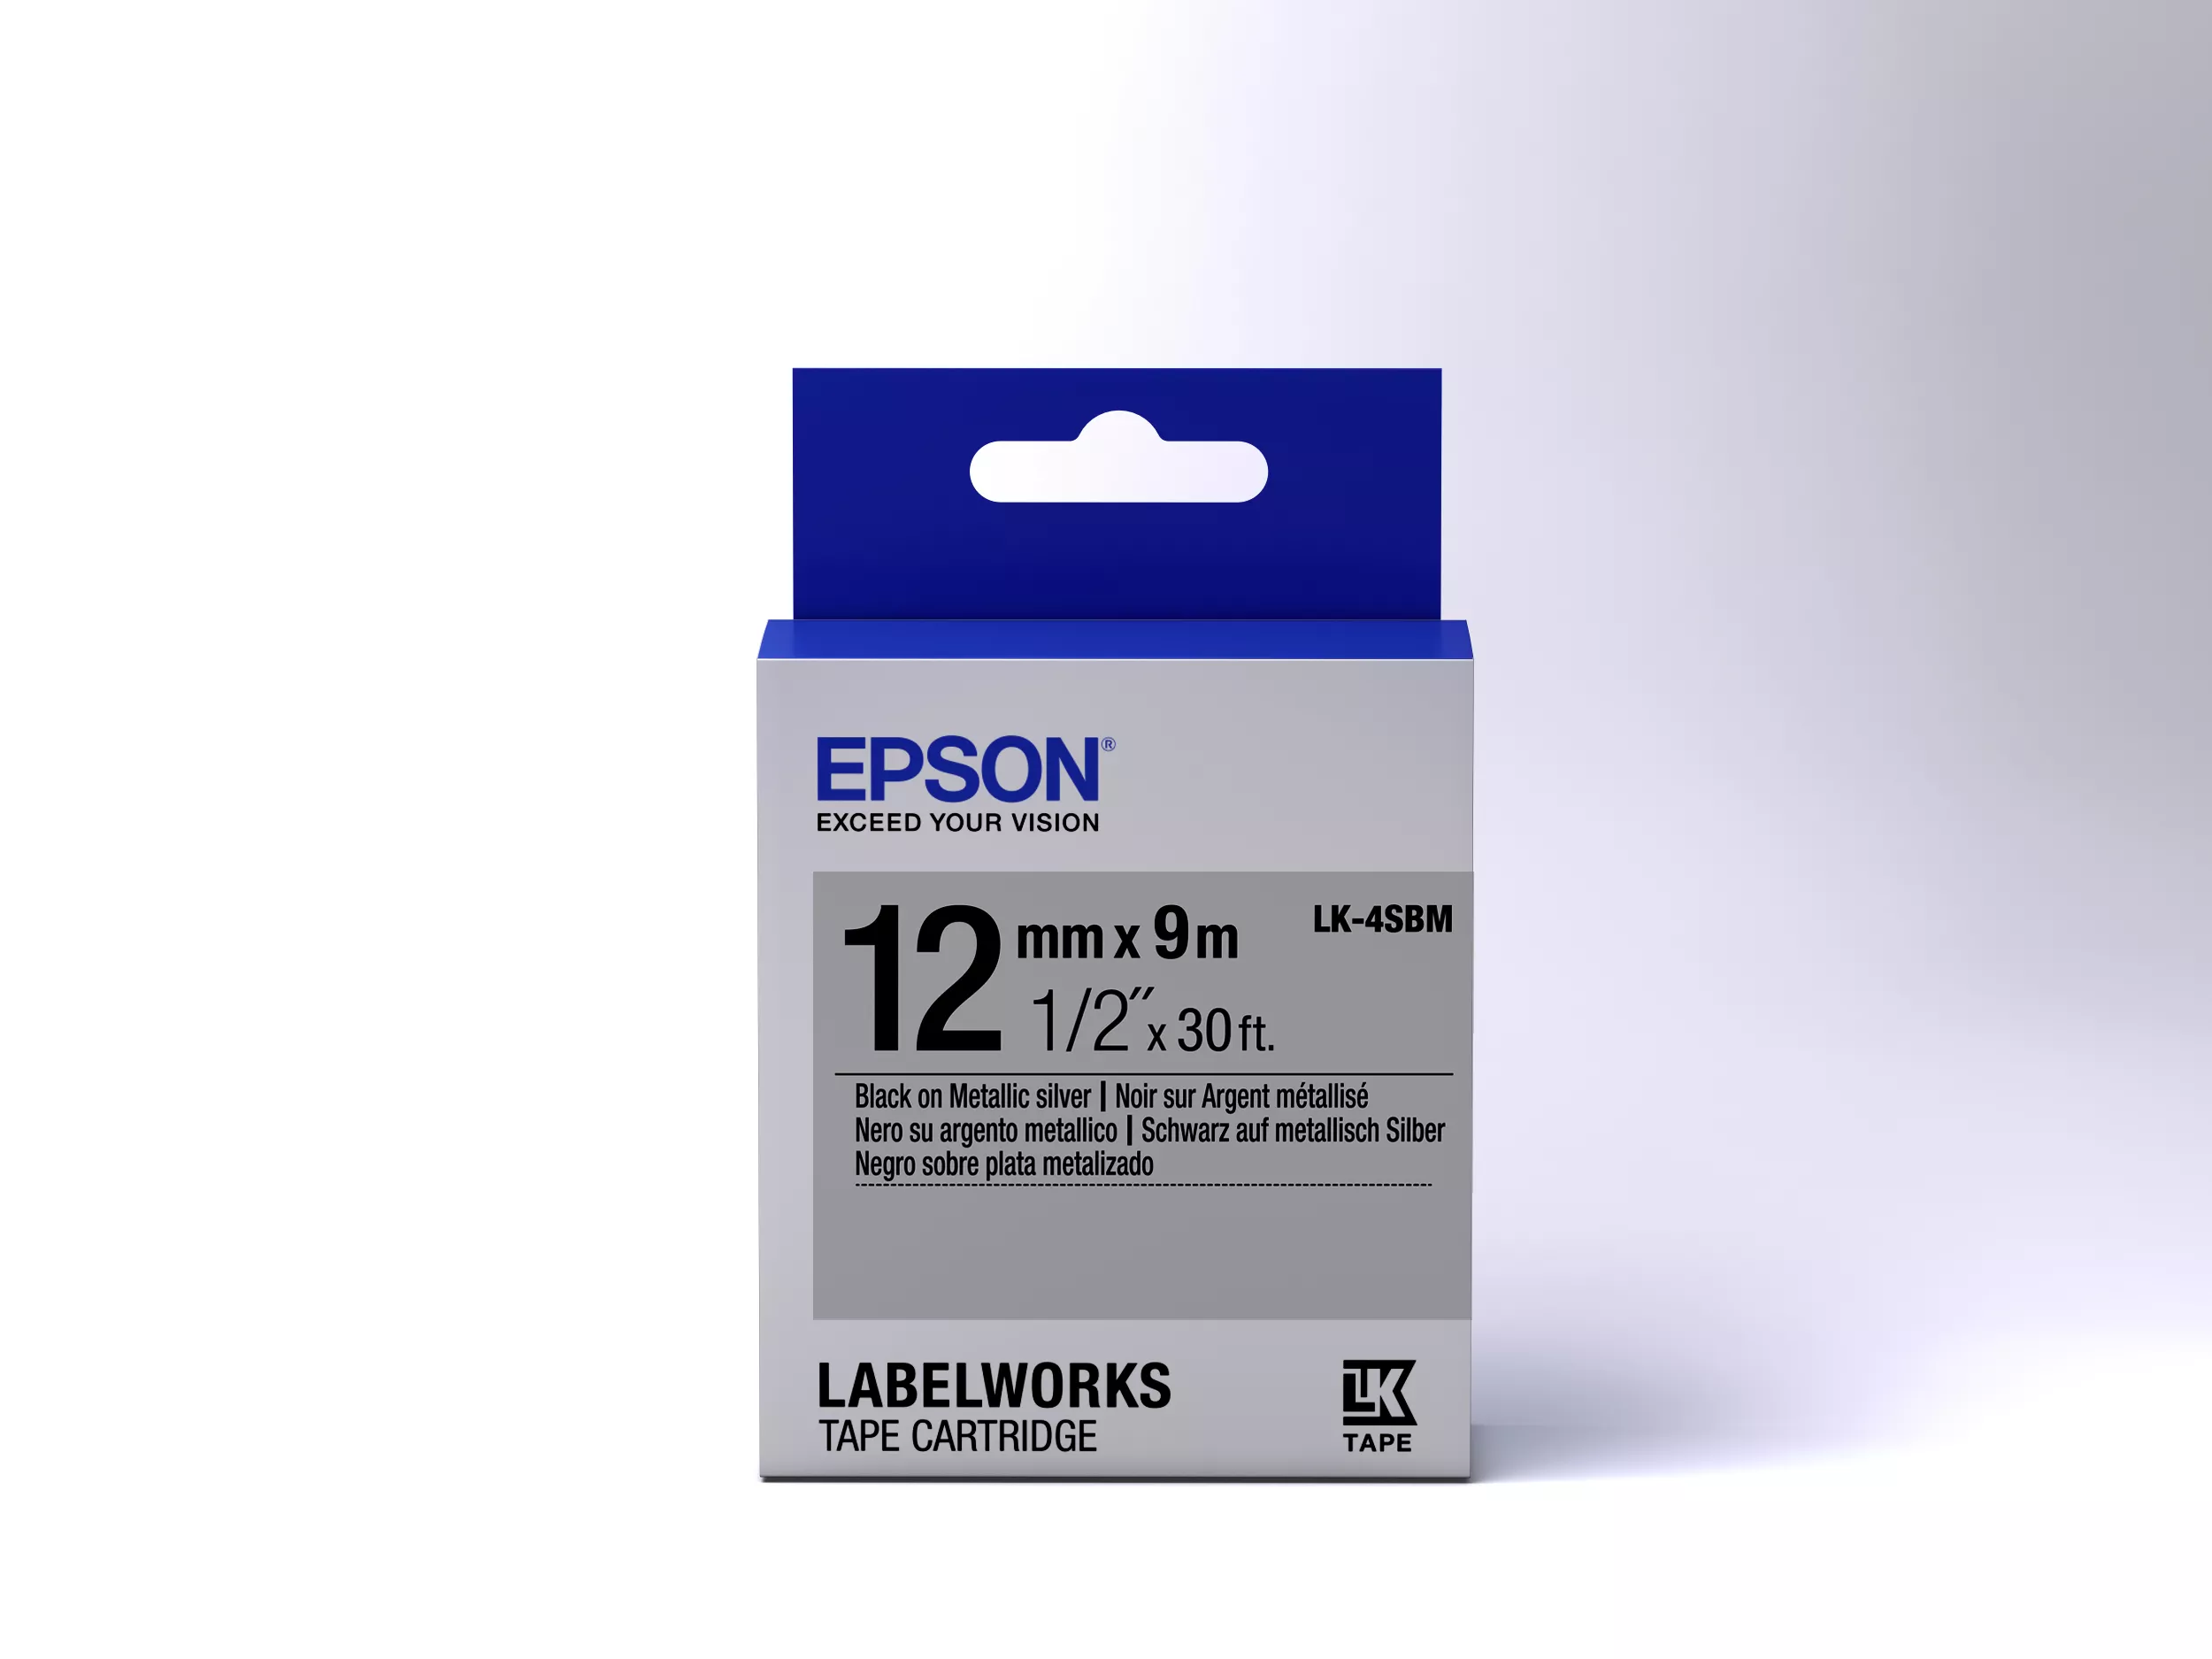 Vente Epson LK-4SBM - Métallisé - Noir sur Argent Epson au meilleur prix - visuel 2